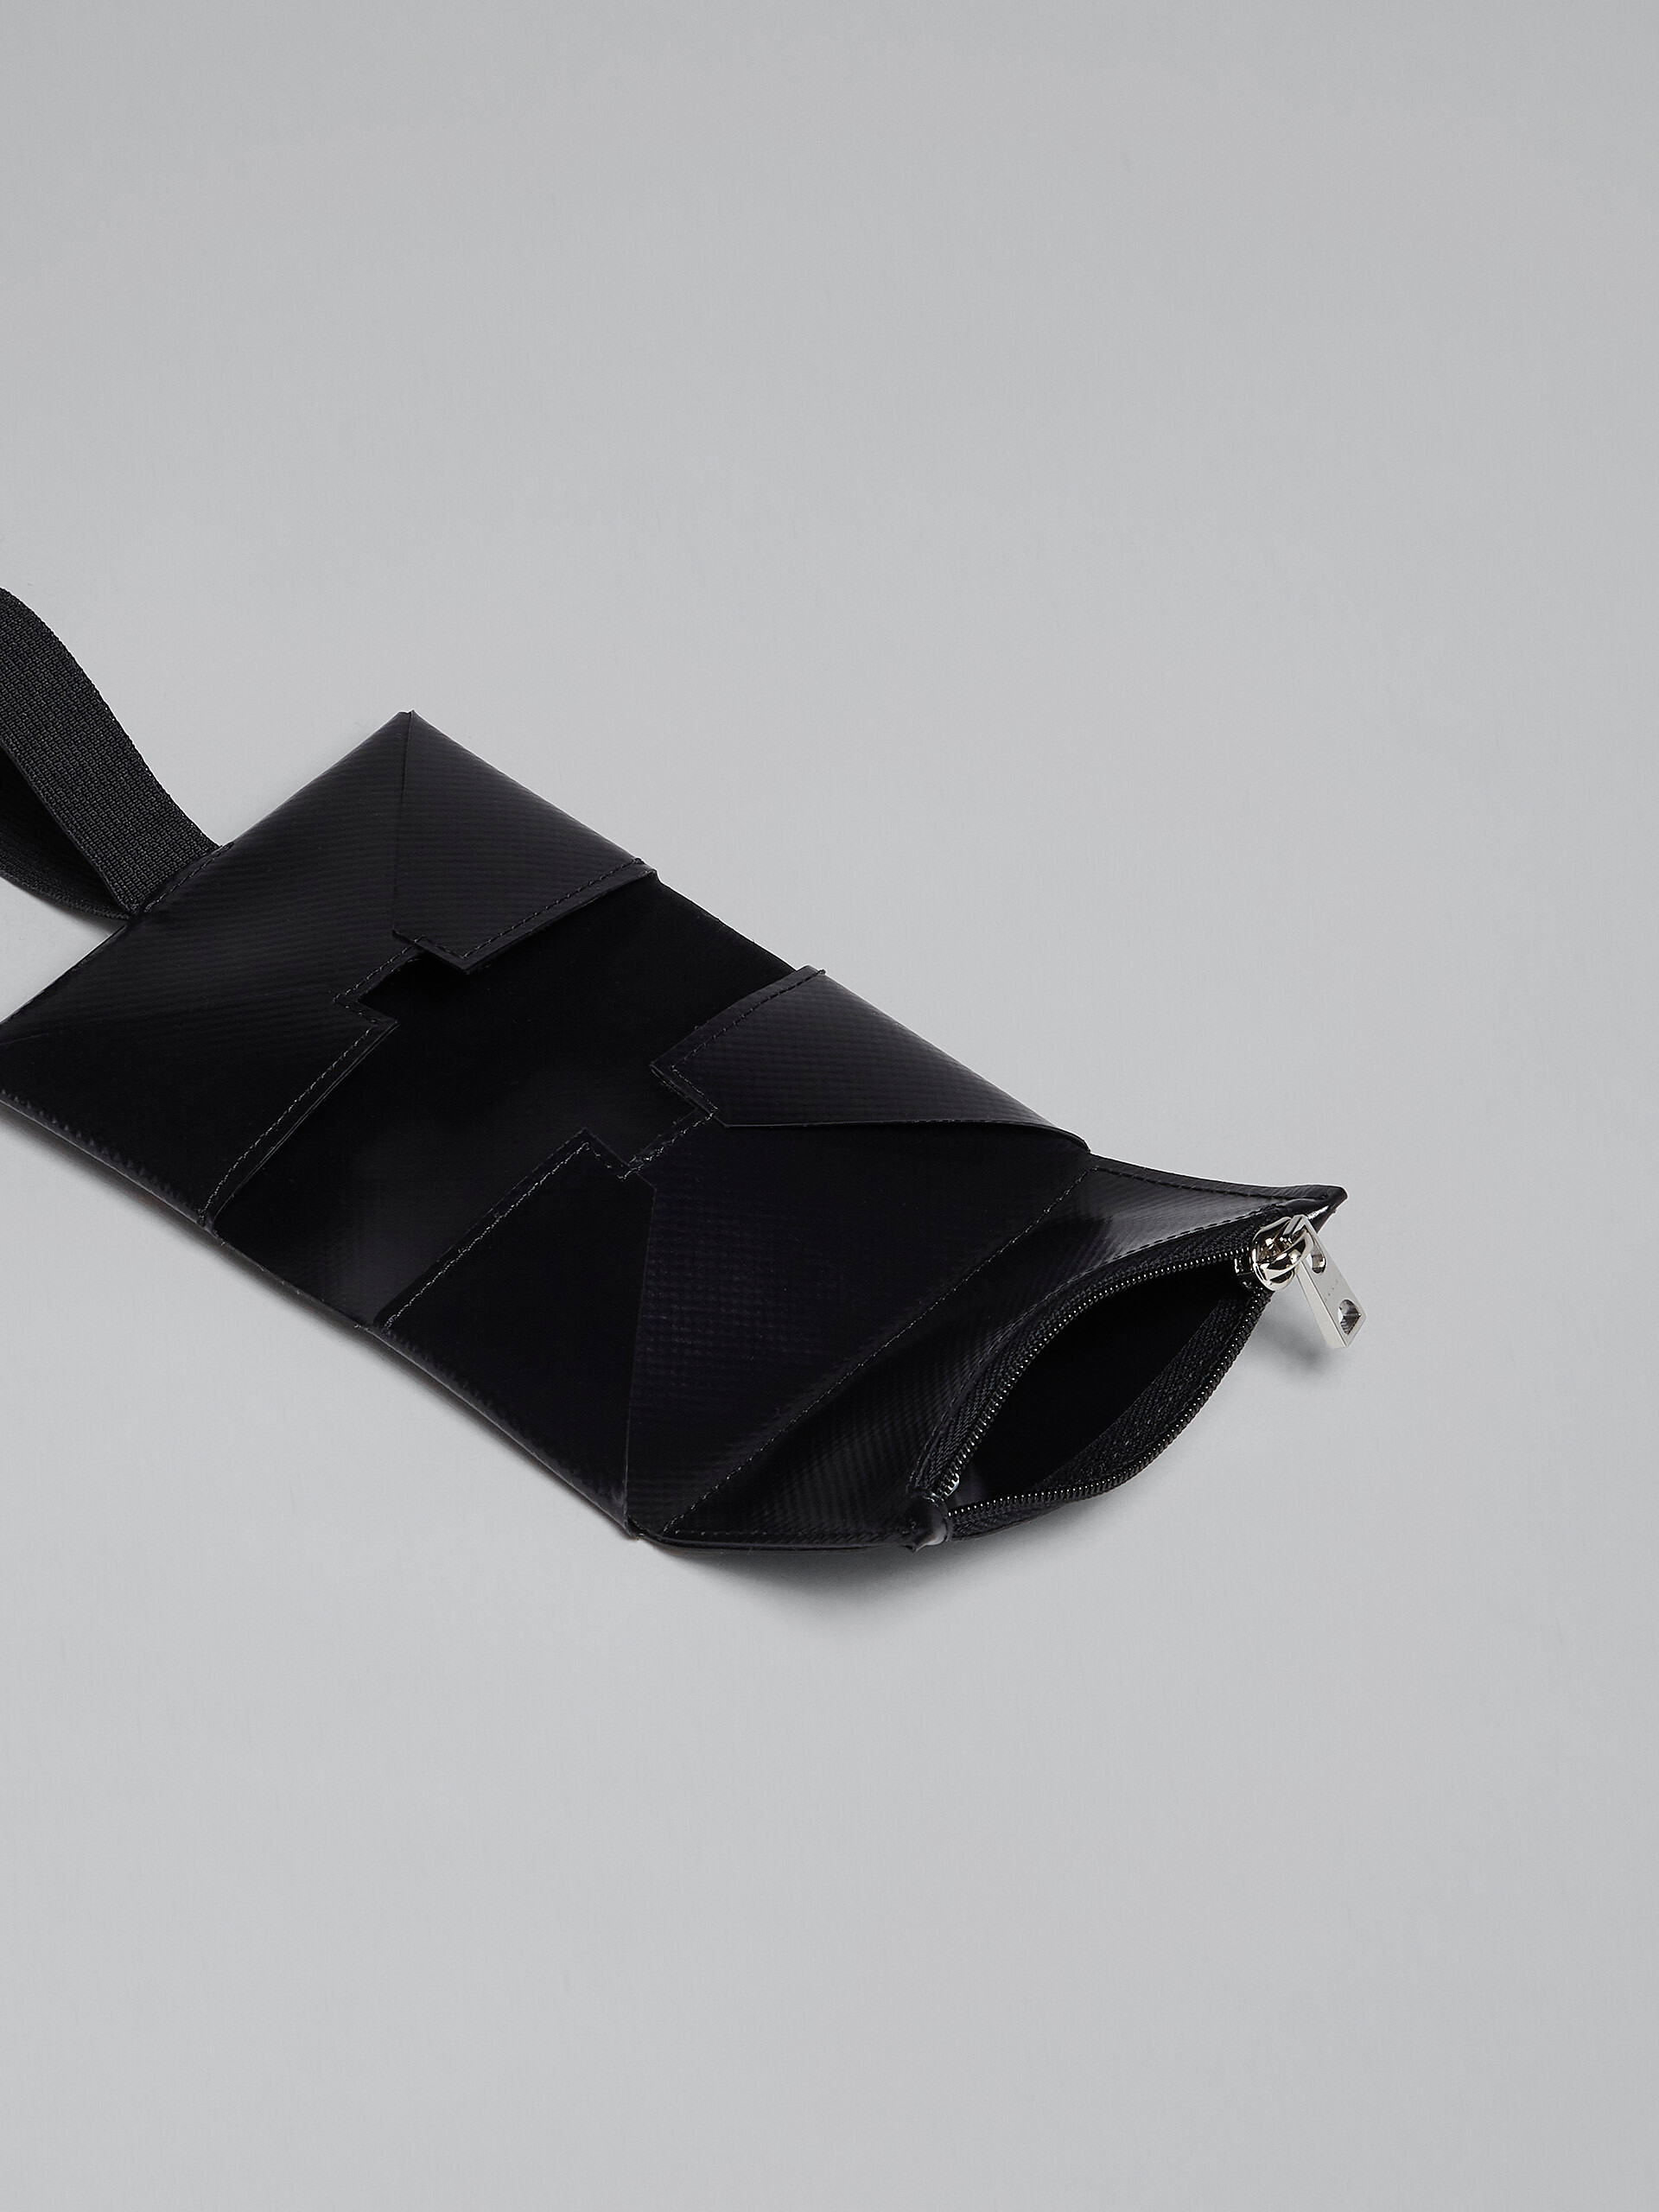 Dreifache Faltbrieftasche in Schwarz - Brieftaschen - Image 2